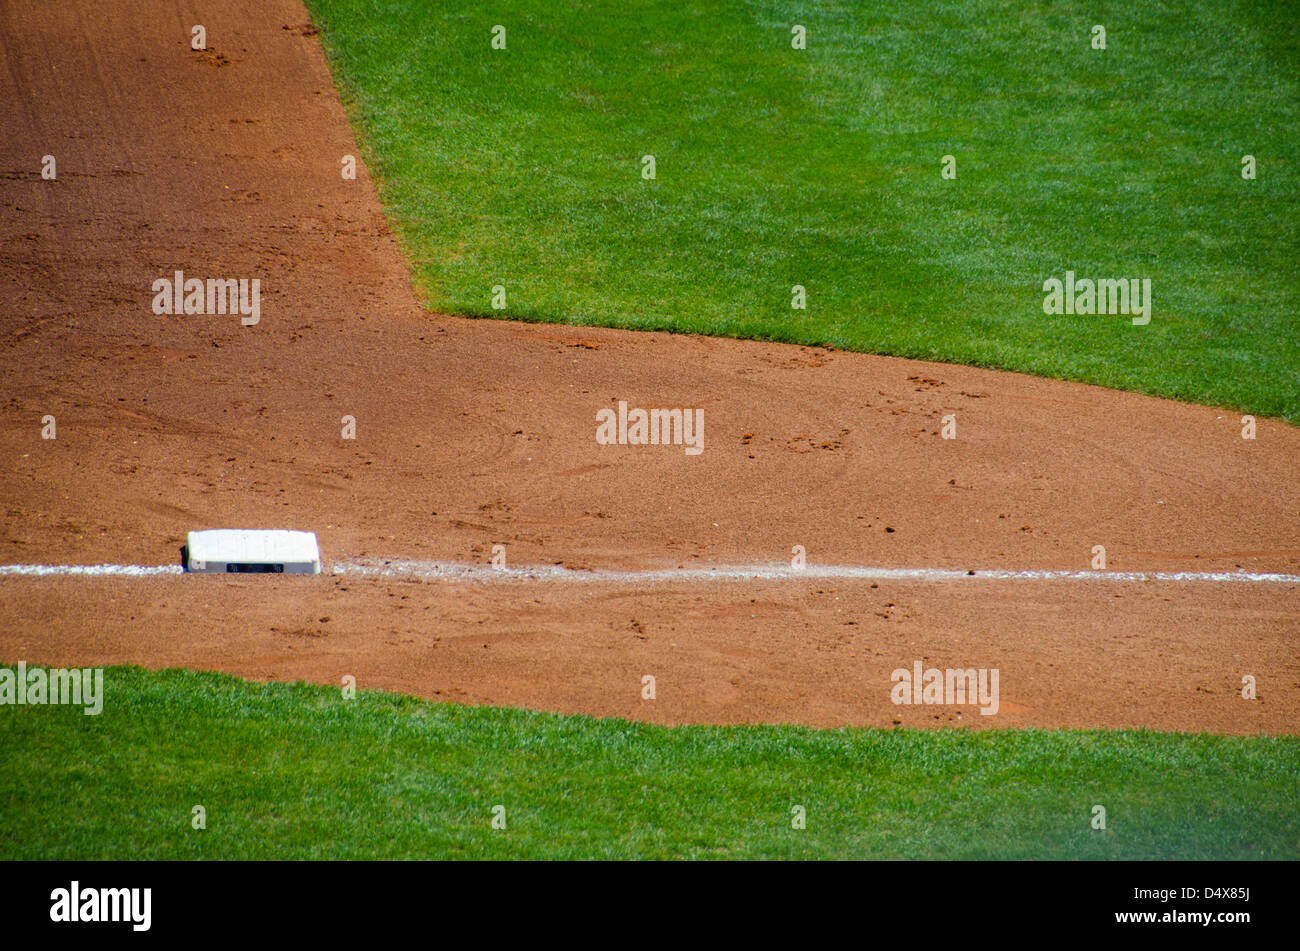 Résumé fond texture de la brown la saleté et l'herbe verte d'un terrain de baseball professionnel avec troisième ligne de base et de base Banque D'Images